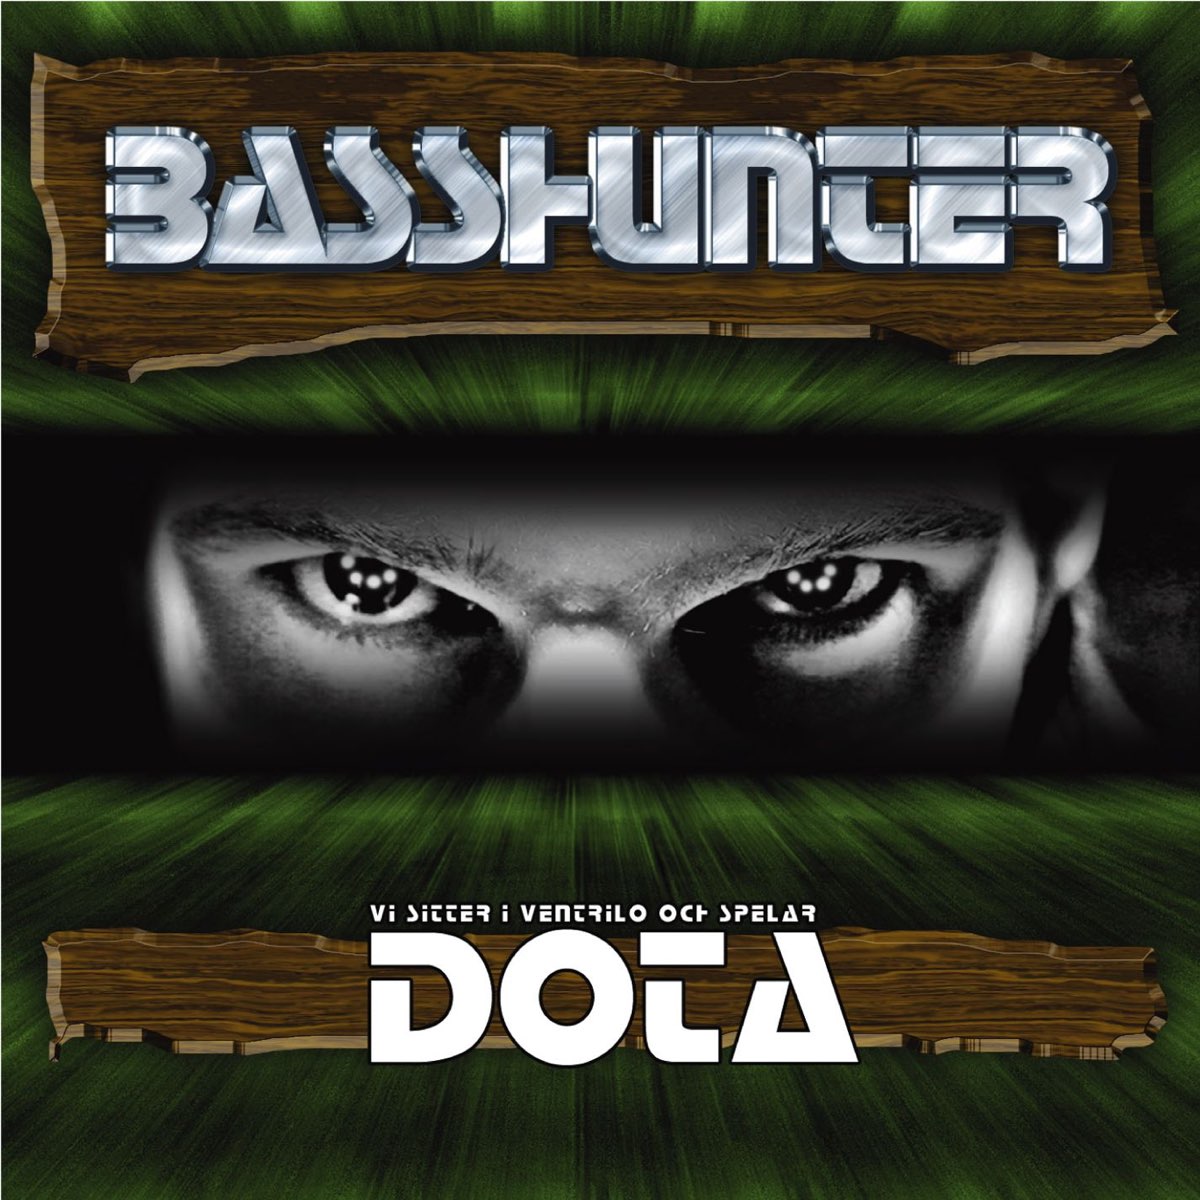 Basshunter — DotA cover artwork